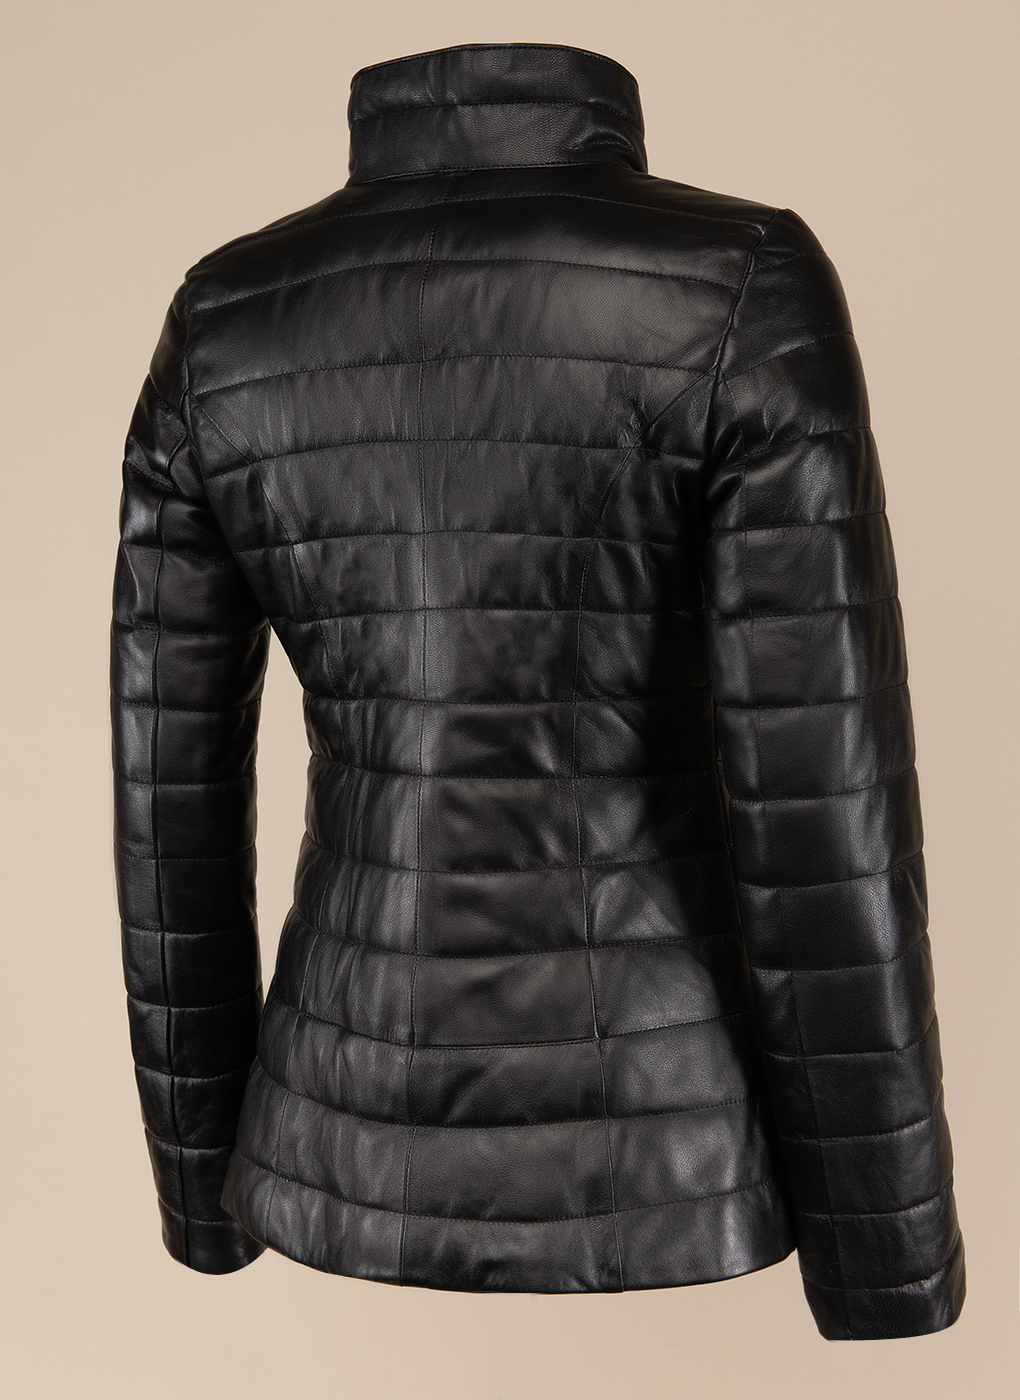 Кожаная куртка женская Каляев 49592 черная 44 RU